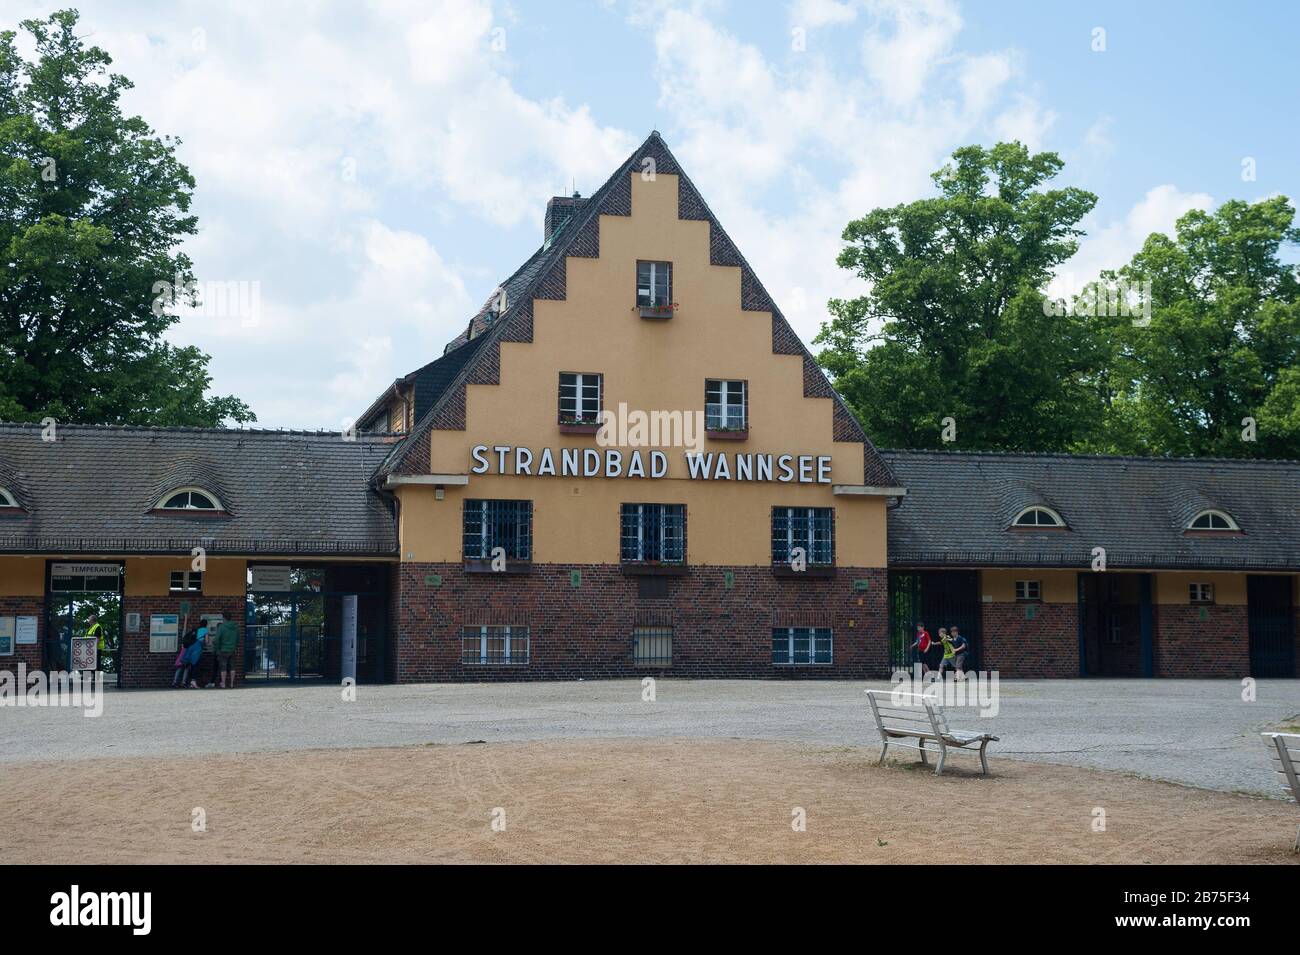 31.05.2017, Berlino, Germania, Europa - veduta dell'ingresso al lido Wannsee a Steglitz-Zehlendorf. [traduzione automatica] Foto Stock